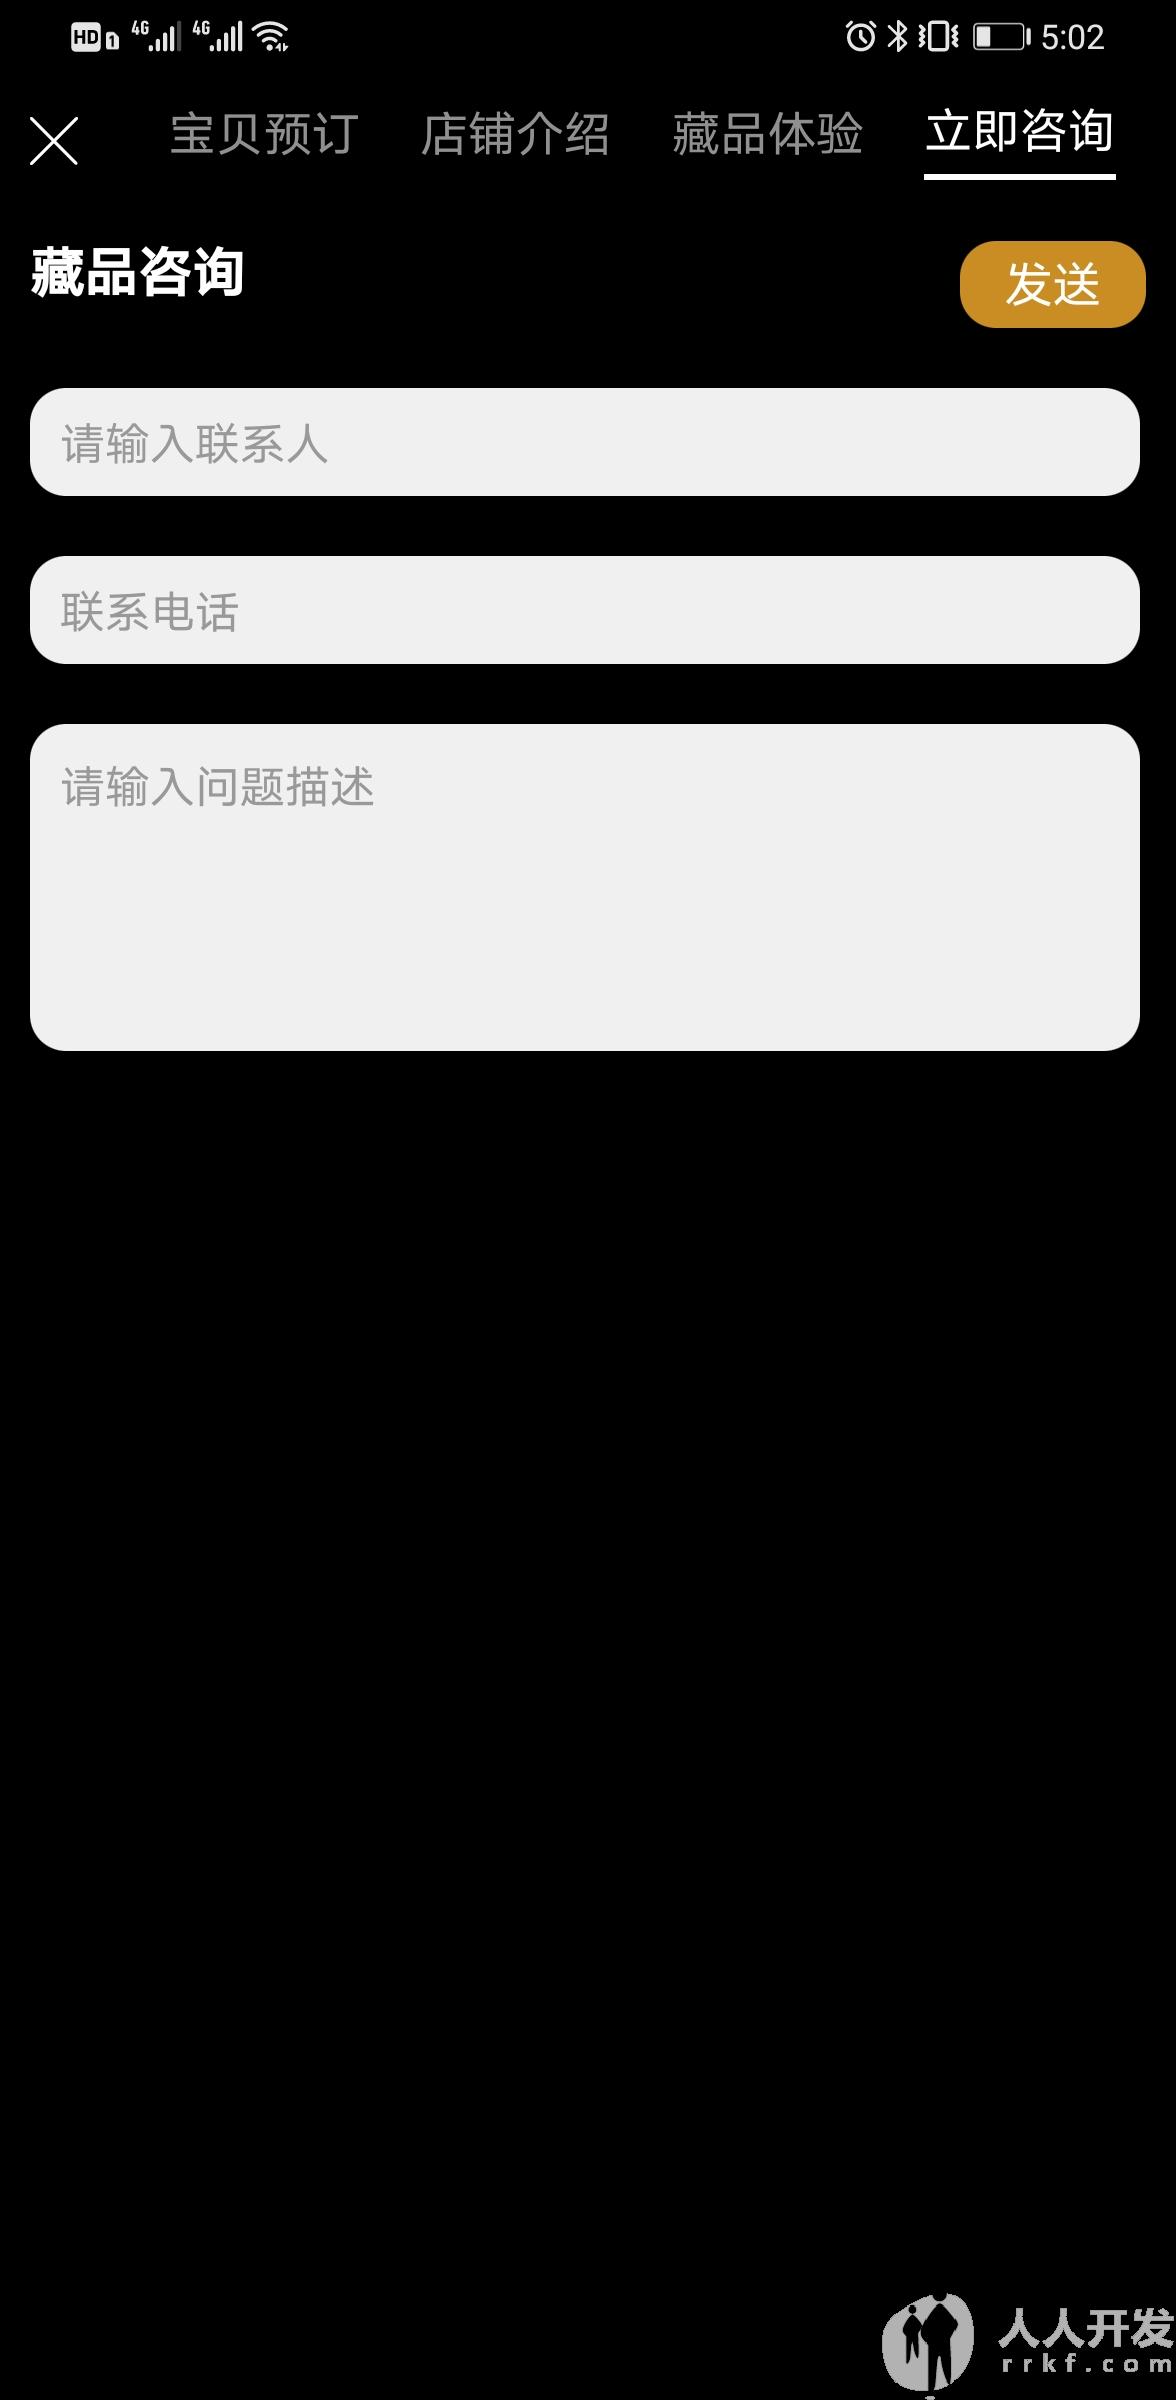 Screenshot 20210423 170208 com.yiyuanyoudao.app